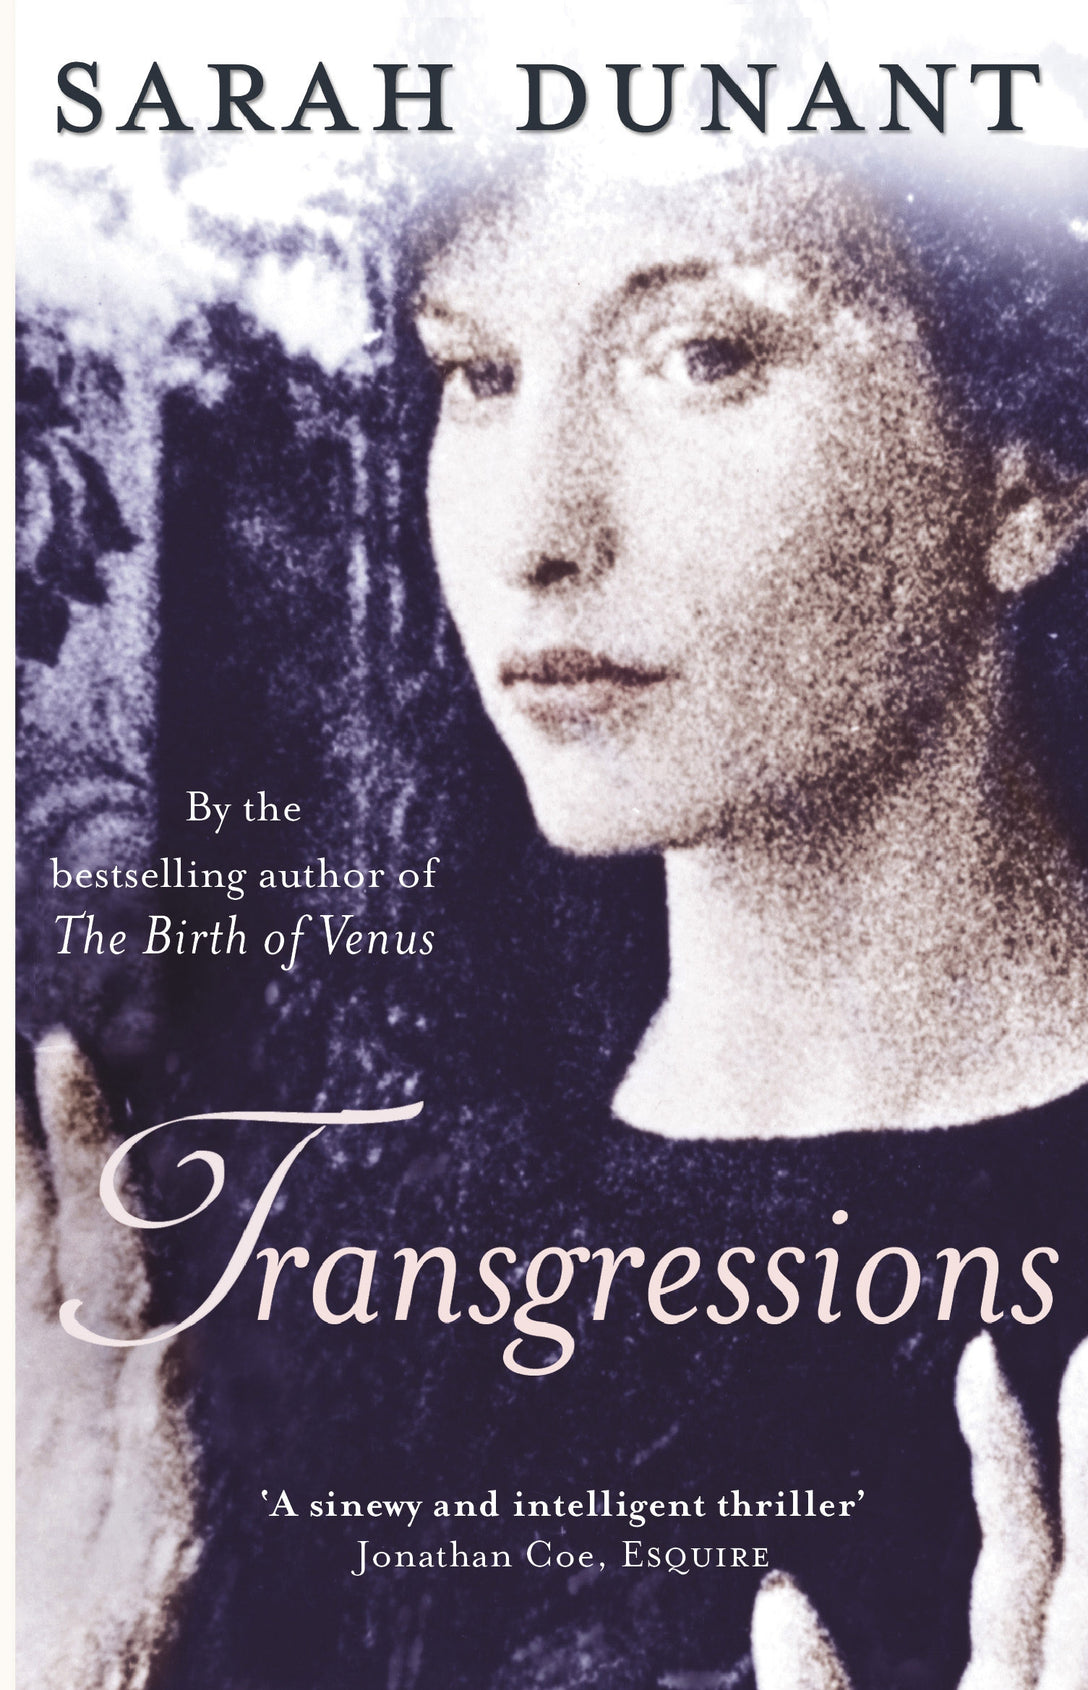 Transgressions by Sarah Dunant